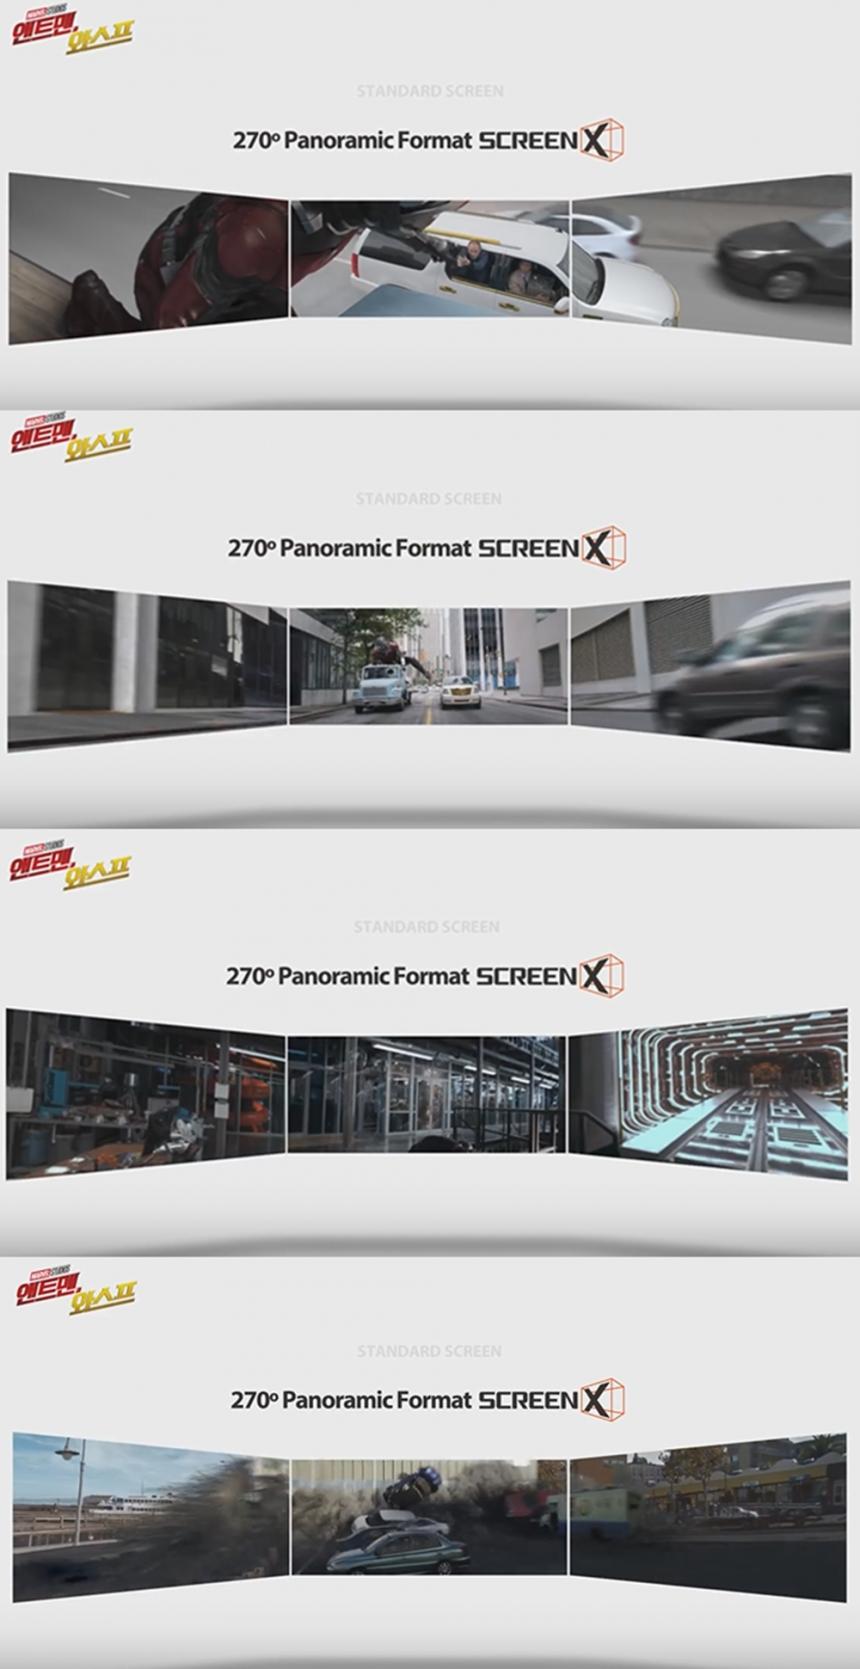 영화 ‘앤트맨과 와스프’ 스크린X-2D 비교 영상 / 스크린X